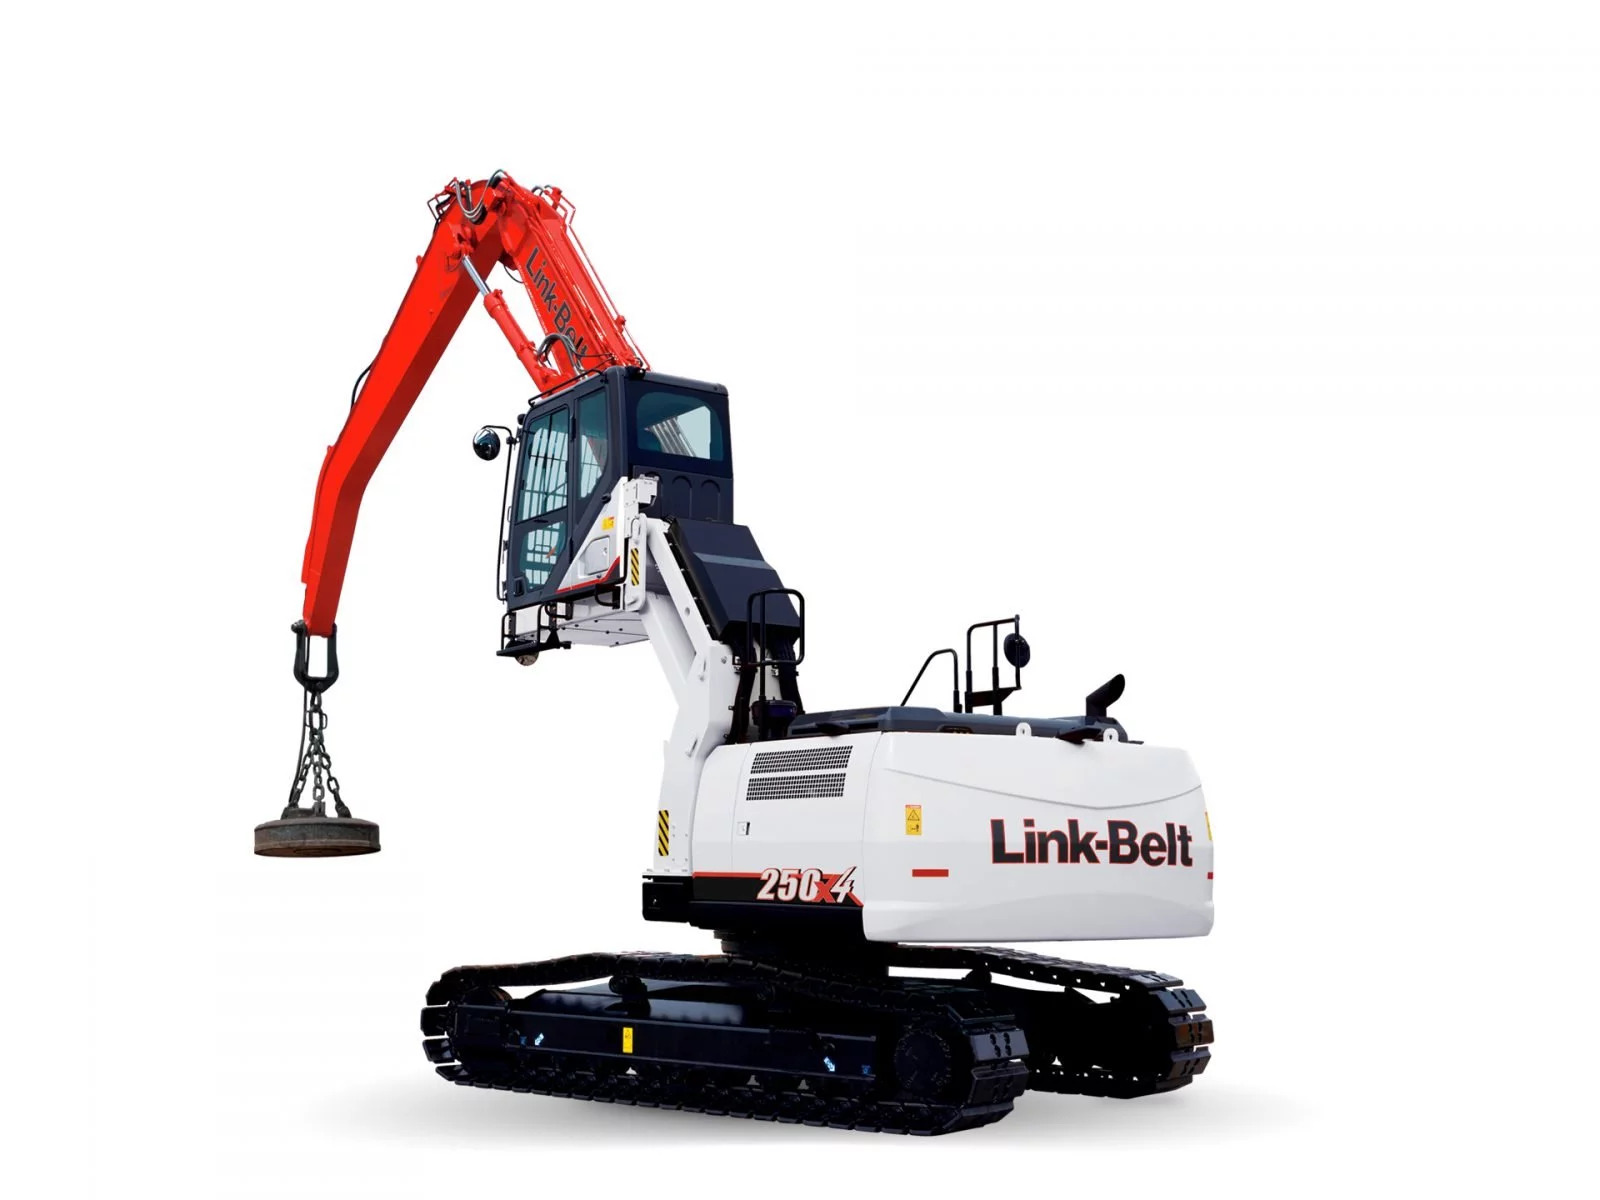 Link-Belt excavator 250x4 scrap loader | Product Link-Belt excavator 250x4 scrap loader